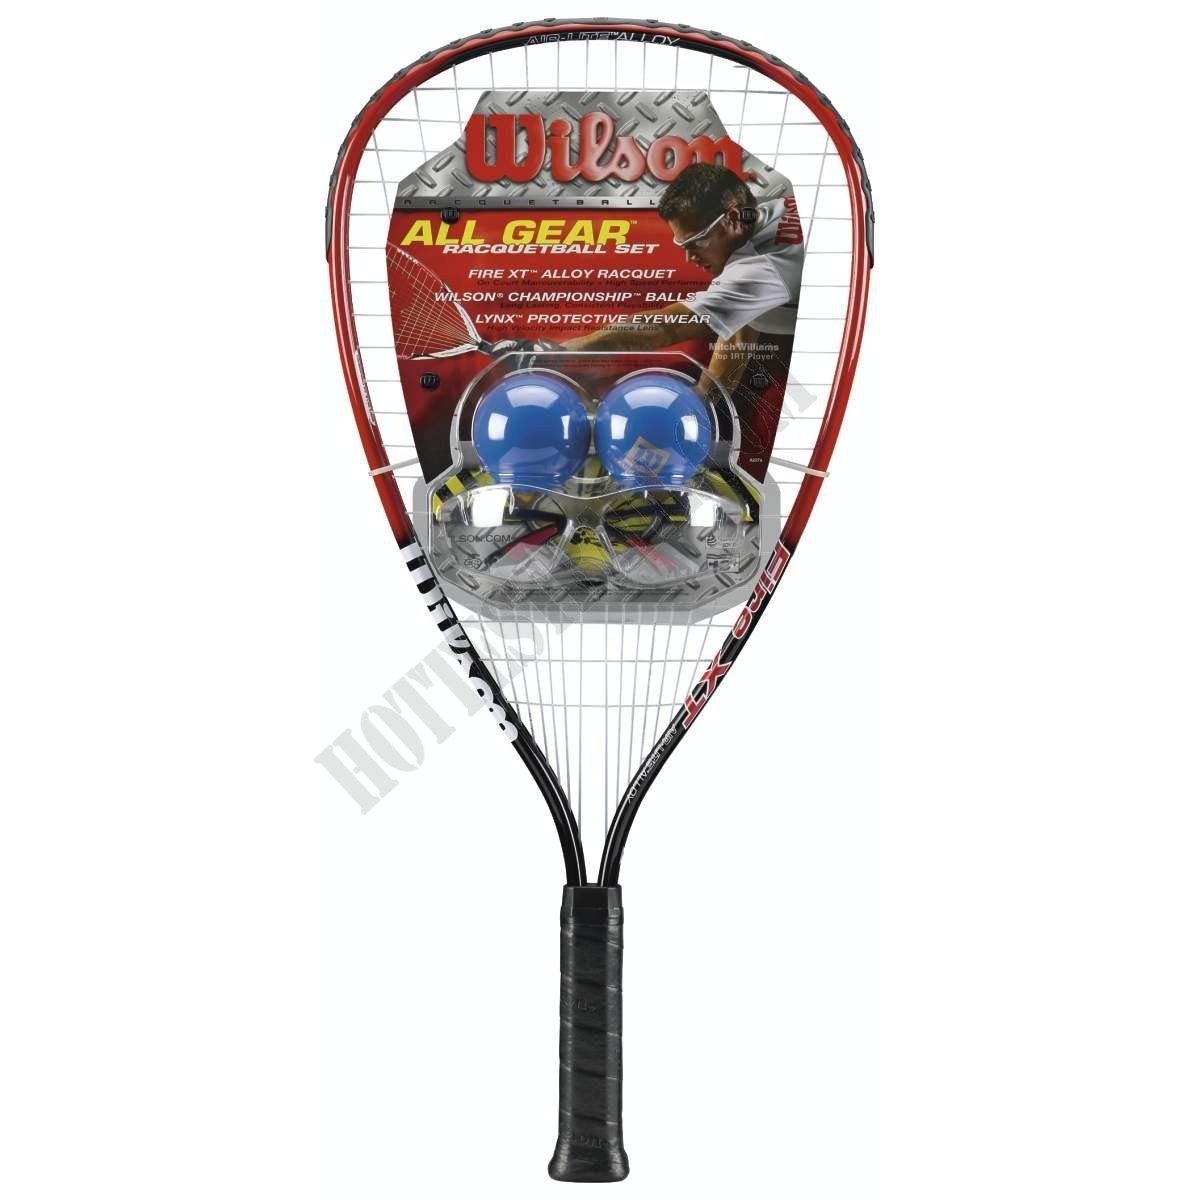 Racketball All Gear Set - Wilson Discount Store - Racketball All Gear Set - Wilson Discount Store